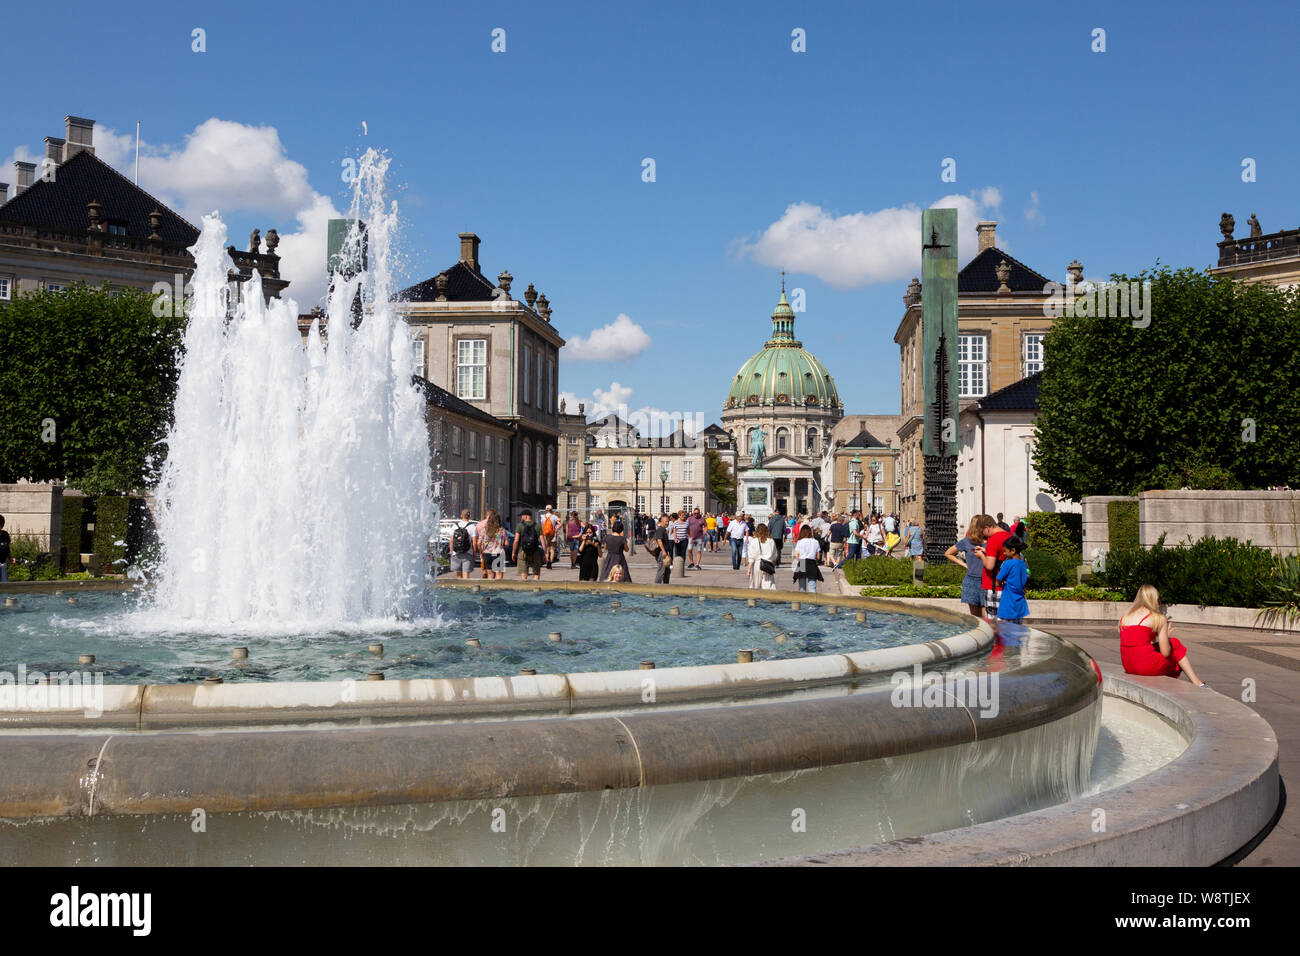 Le Palais d'Amalienborg Copenhagen Danemark - Palais du xviie siècle, le foyer de la famille royale danoise ; et la fontaine, Copenhague Danemark Scandinavie Europe Banque D'Images